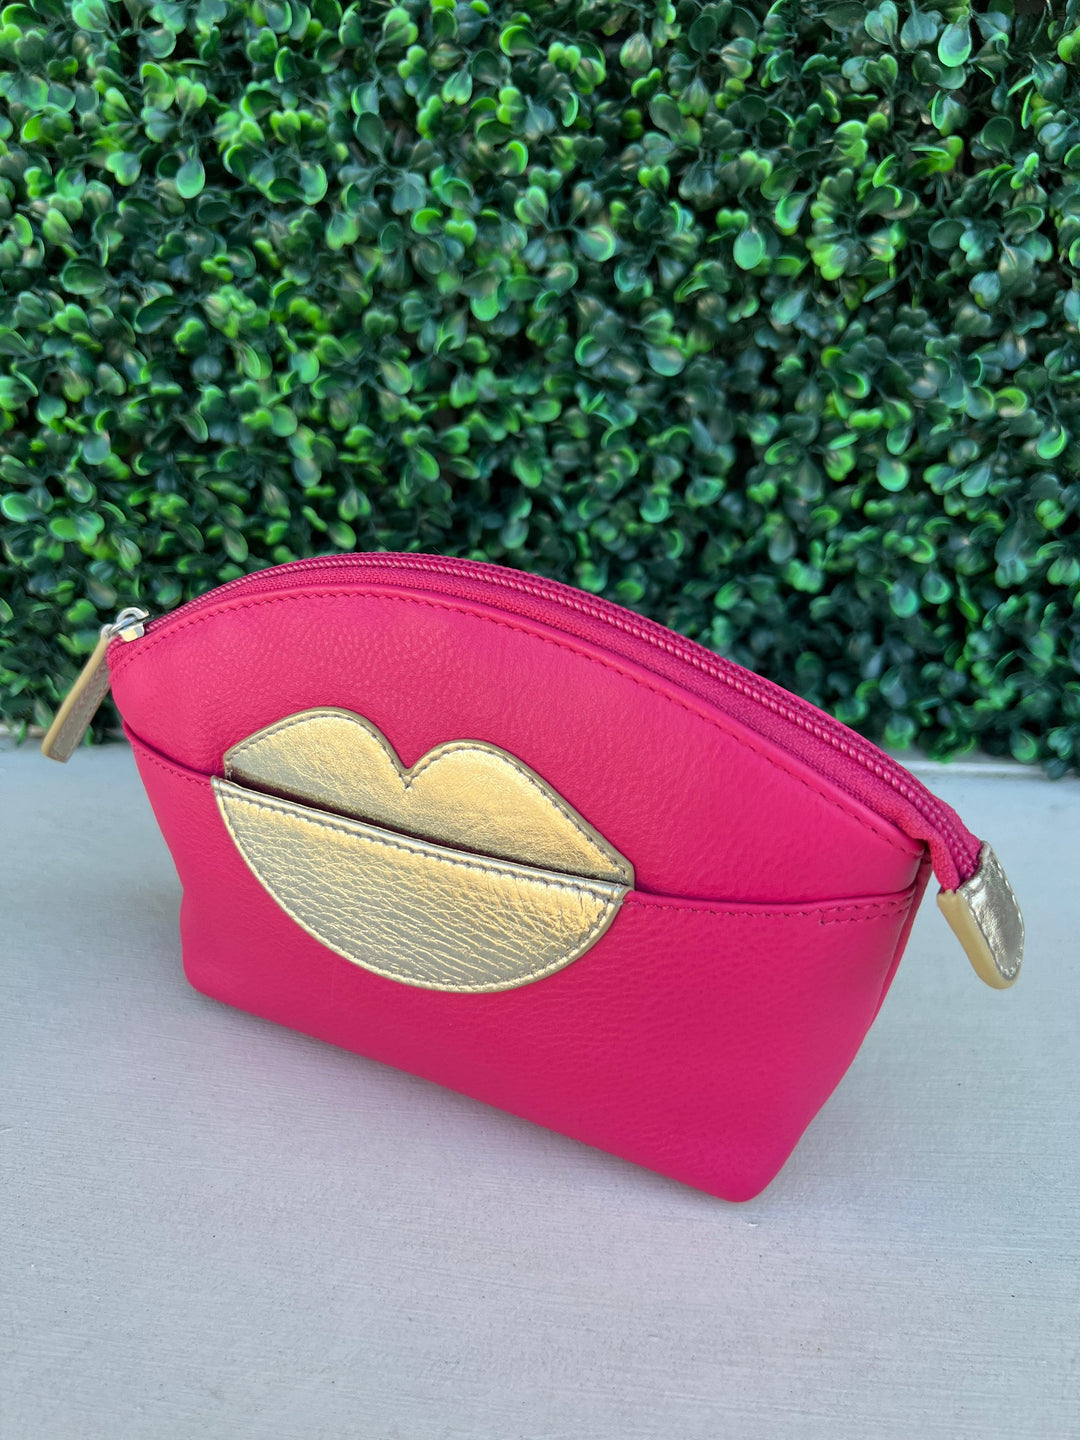 Hot pink VOYD handbag  Handbag, Hot pink, Louis vuitton speedy bag